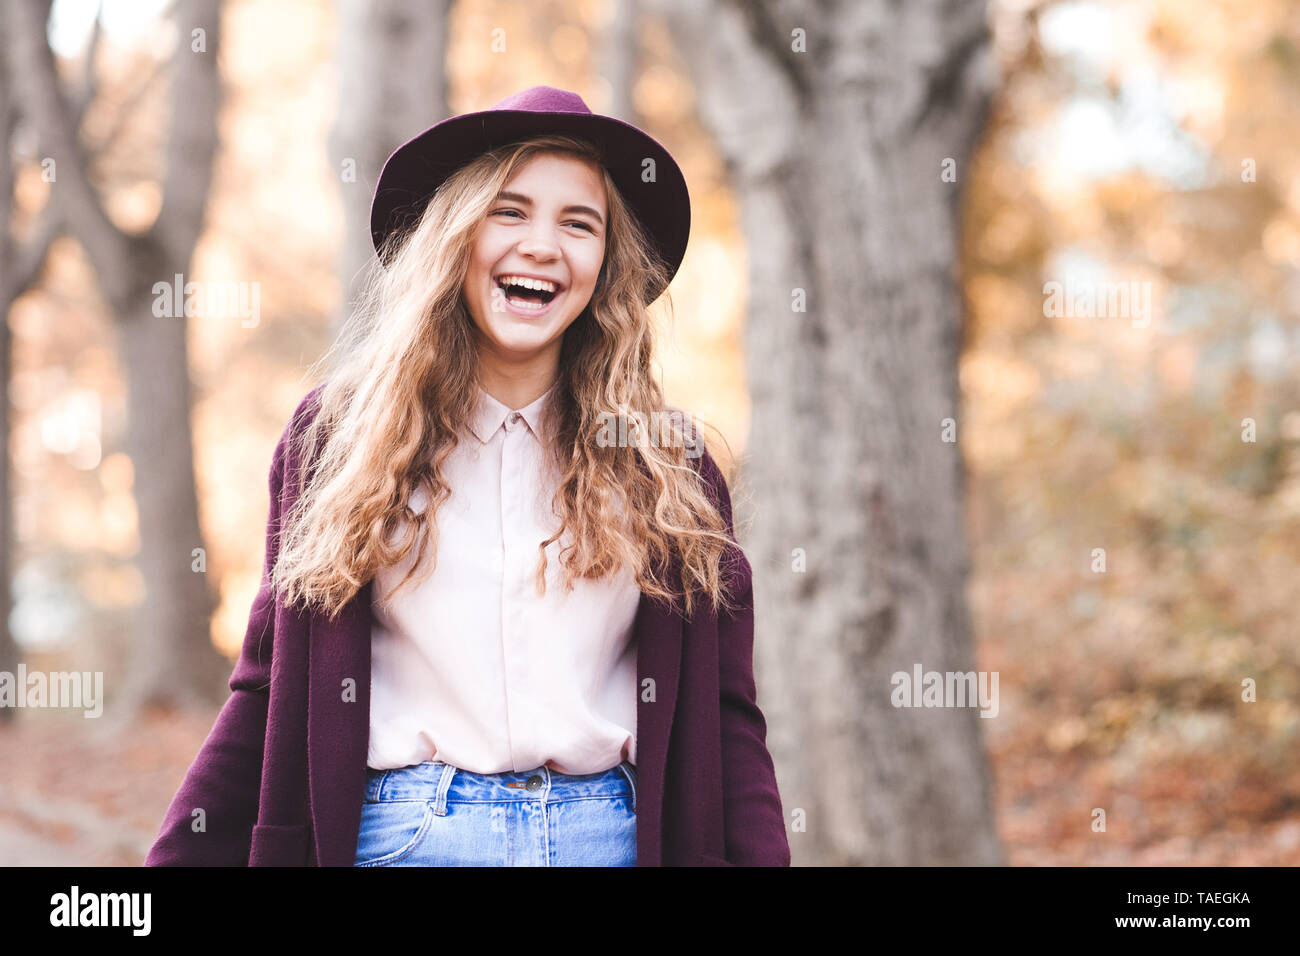 Lachend jugendlich Mädchen 14-16 Jahre alten trug Hut und Jacke walking im Park. Mit Blick auf die Kamera. Teenagerhood. Stockfoto